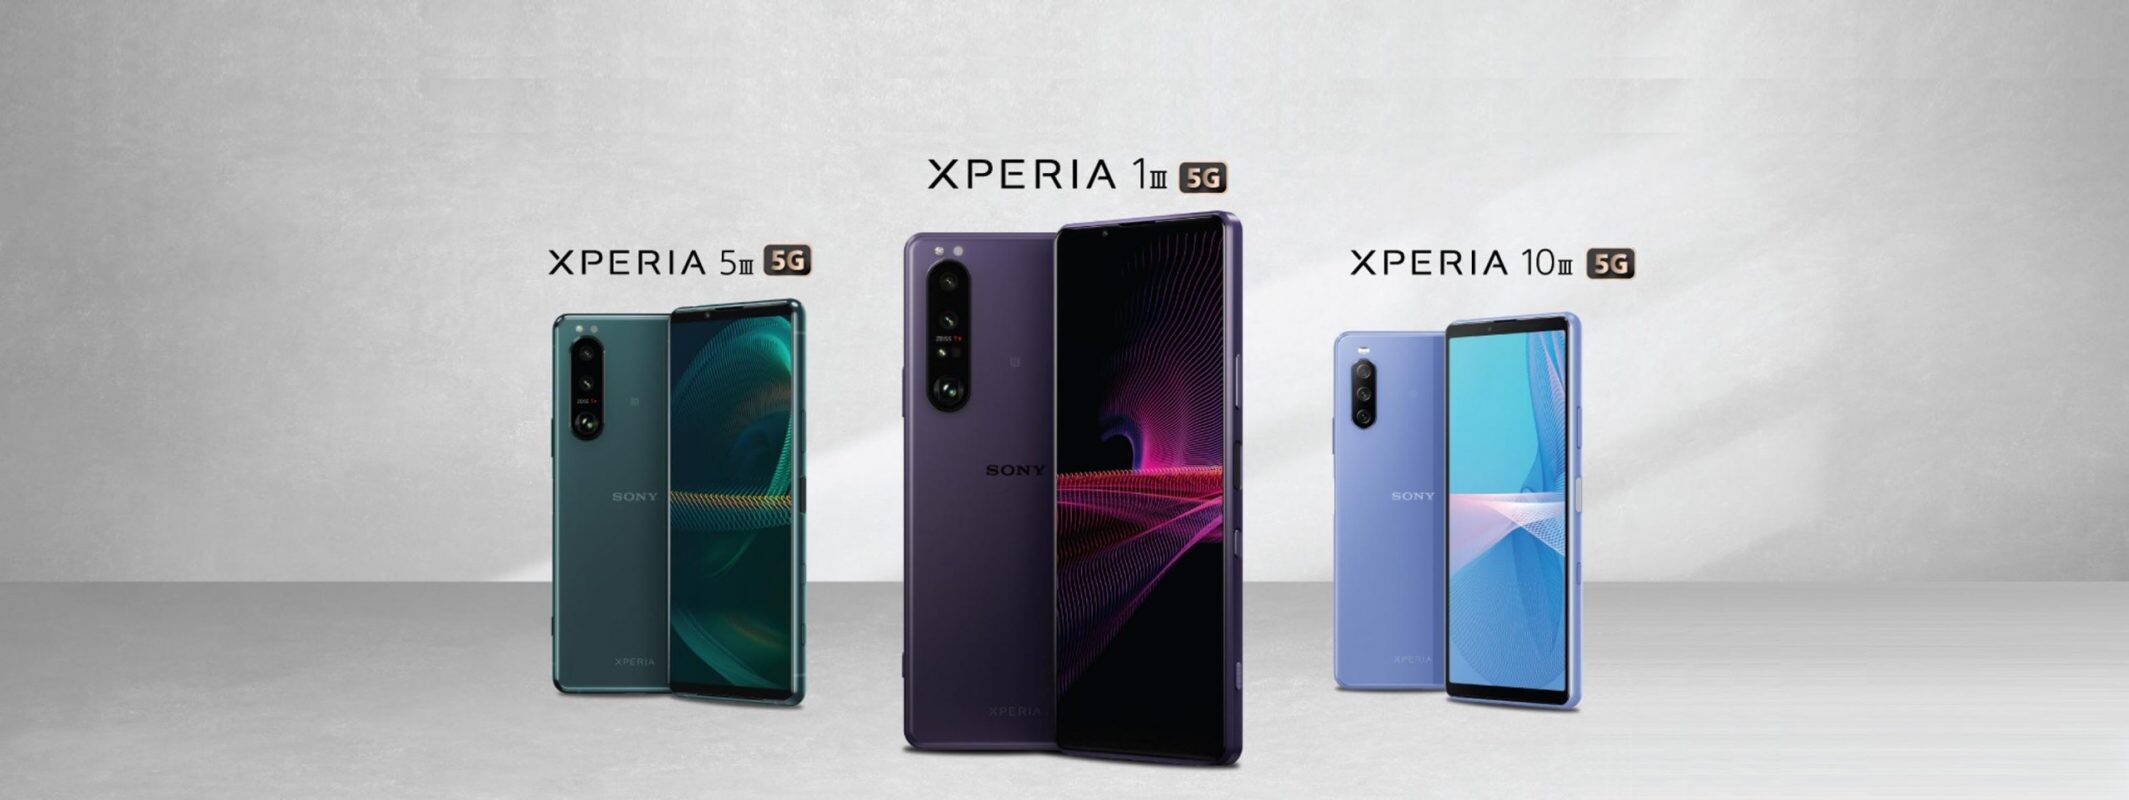 โซนี่ไทยเปิดลงทะเบียนผู้สนใจสมาร์ทโฟน Xperia รุ่นใหม่ล่าสุด 3 รุ่น Xperia 1 III, Xperia 5 III และ Xperia 10 III